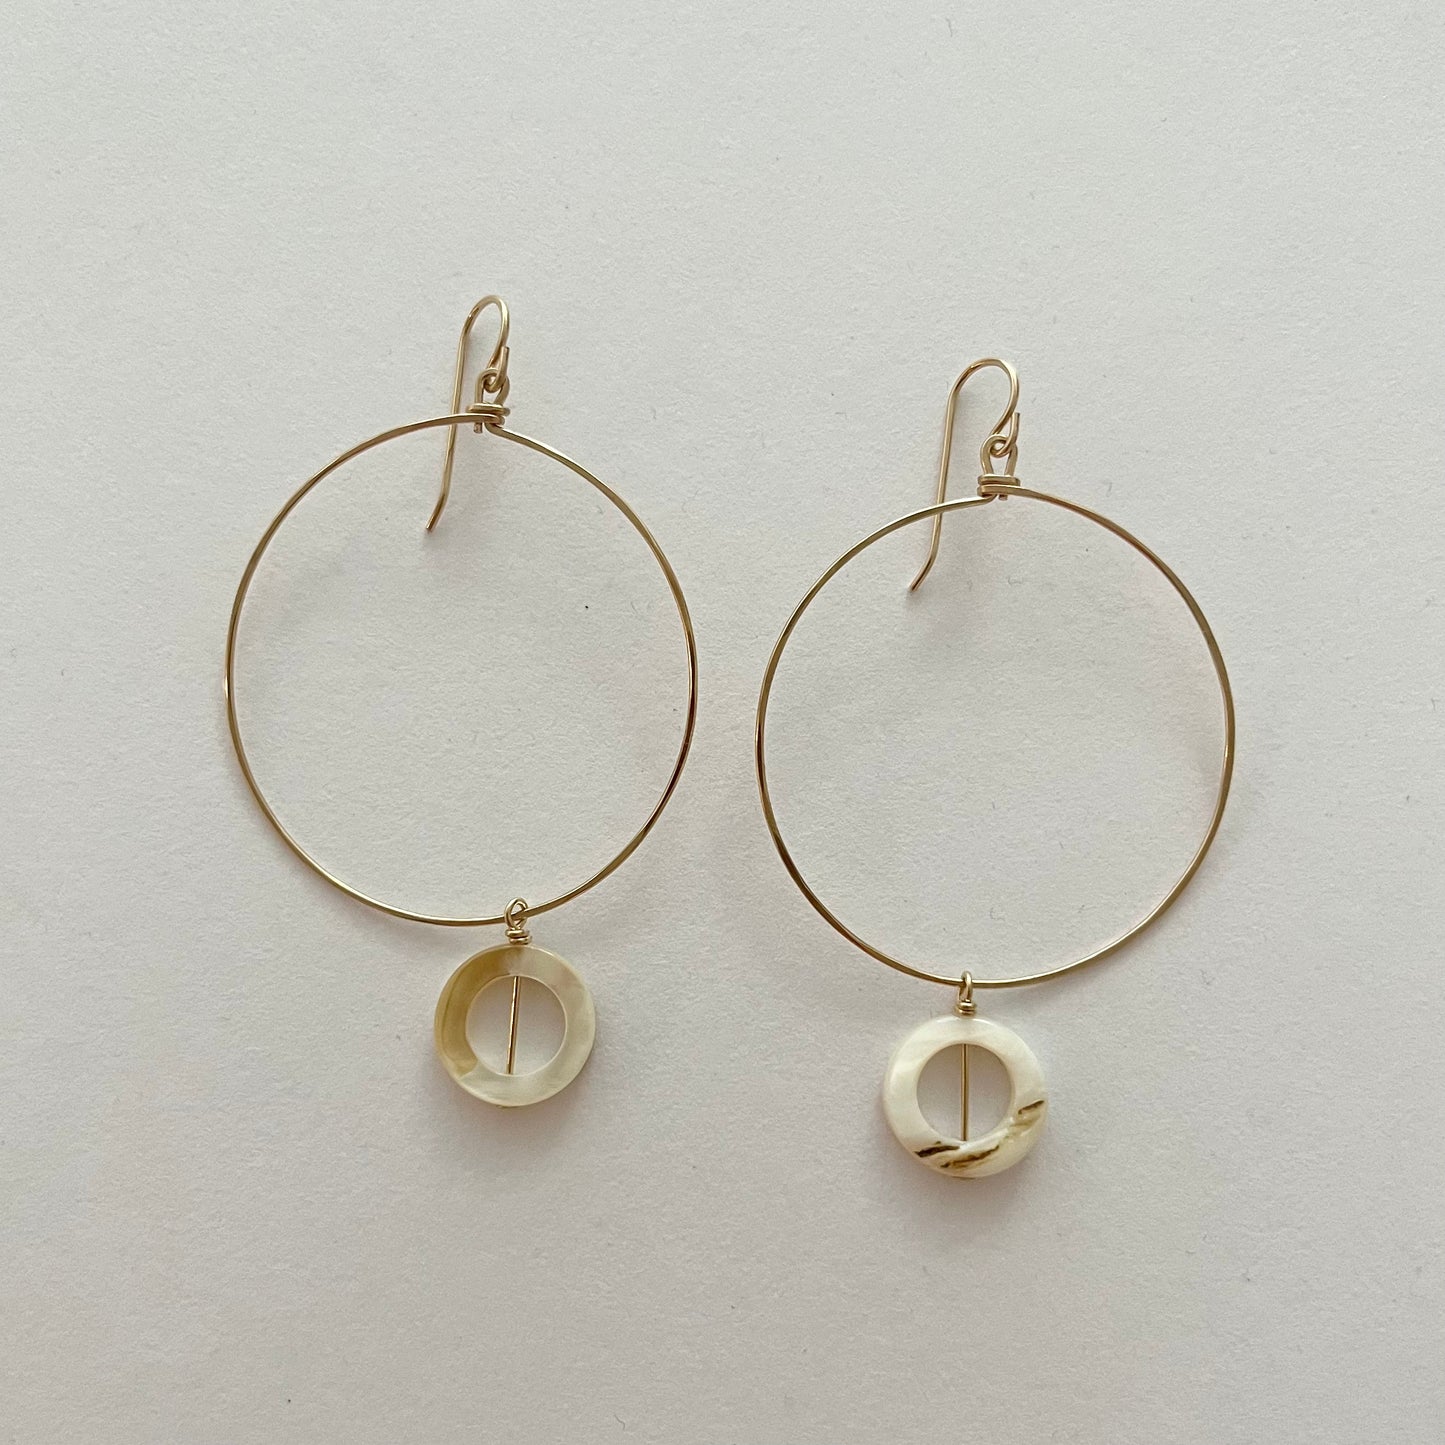 Desert Moon Design • Hoop with Shell Dangle Earrings • 14K Gold Fill